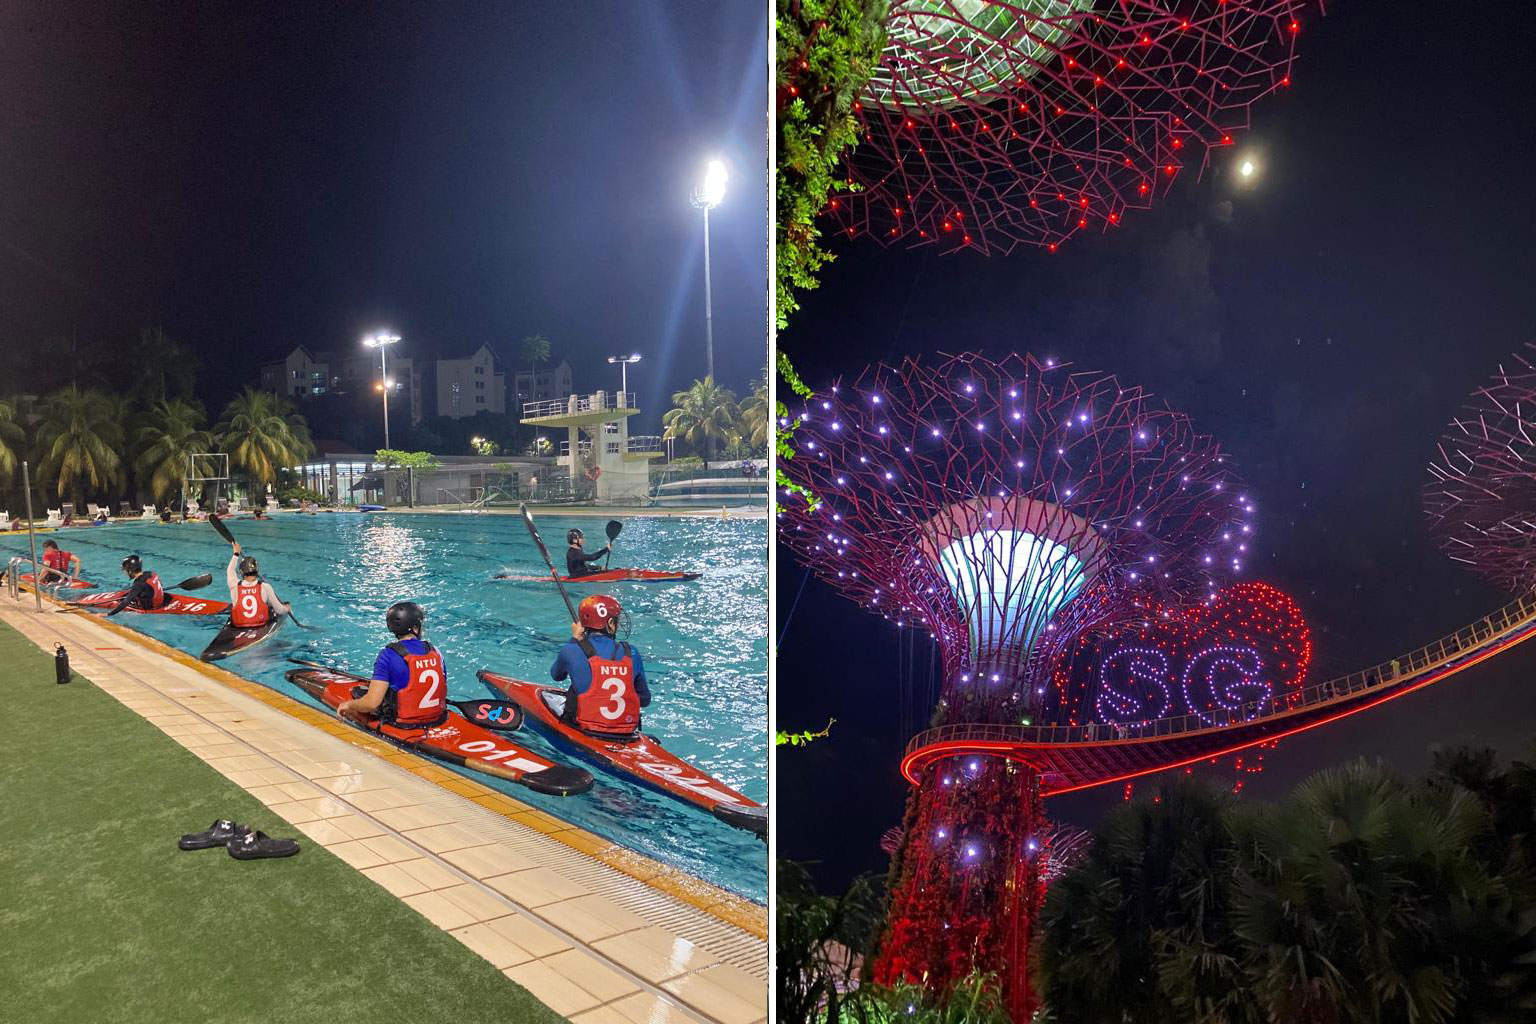 Singapur: links Campus Sport, rechts Licht Show im Garten der Bucht